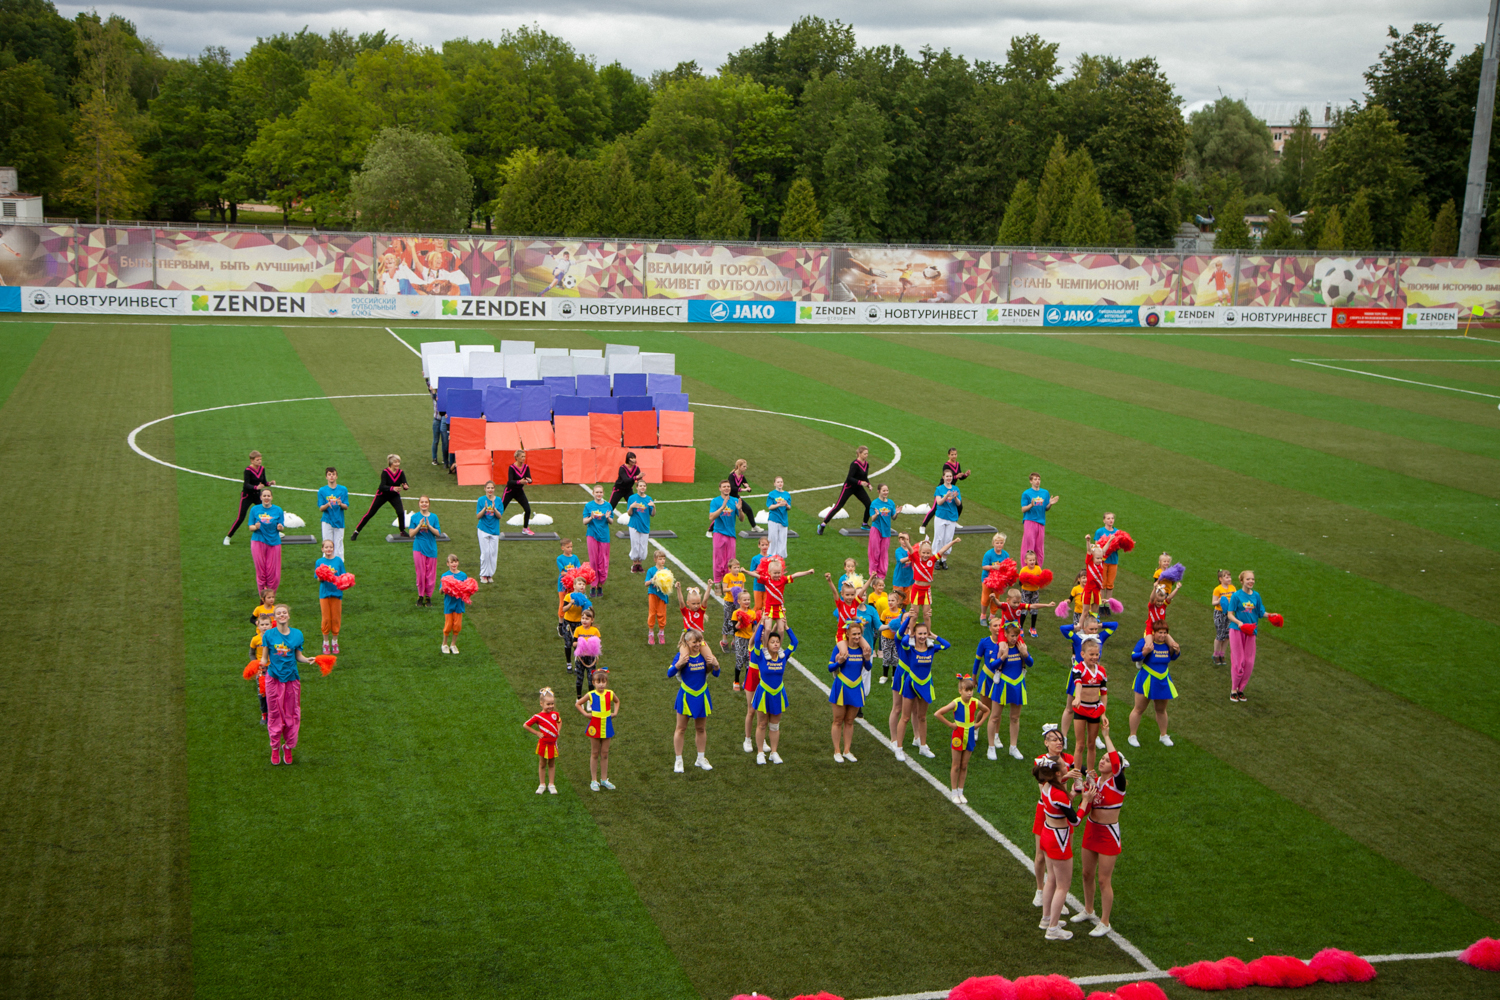 Мероприятия, посвященные 60-летию старейшей городской арены стадиона « Электрон» прошли в Великом Новгороде. — Весь Великий Новгород